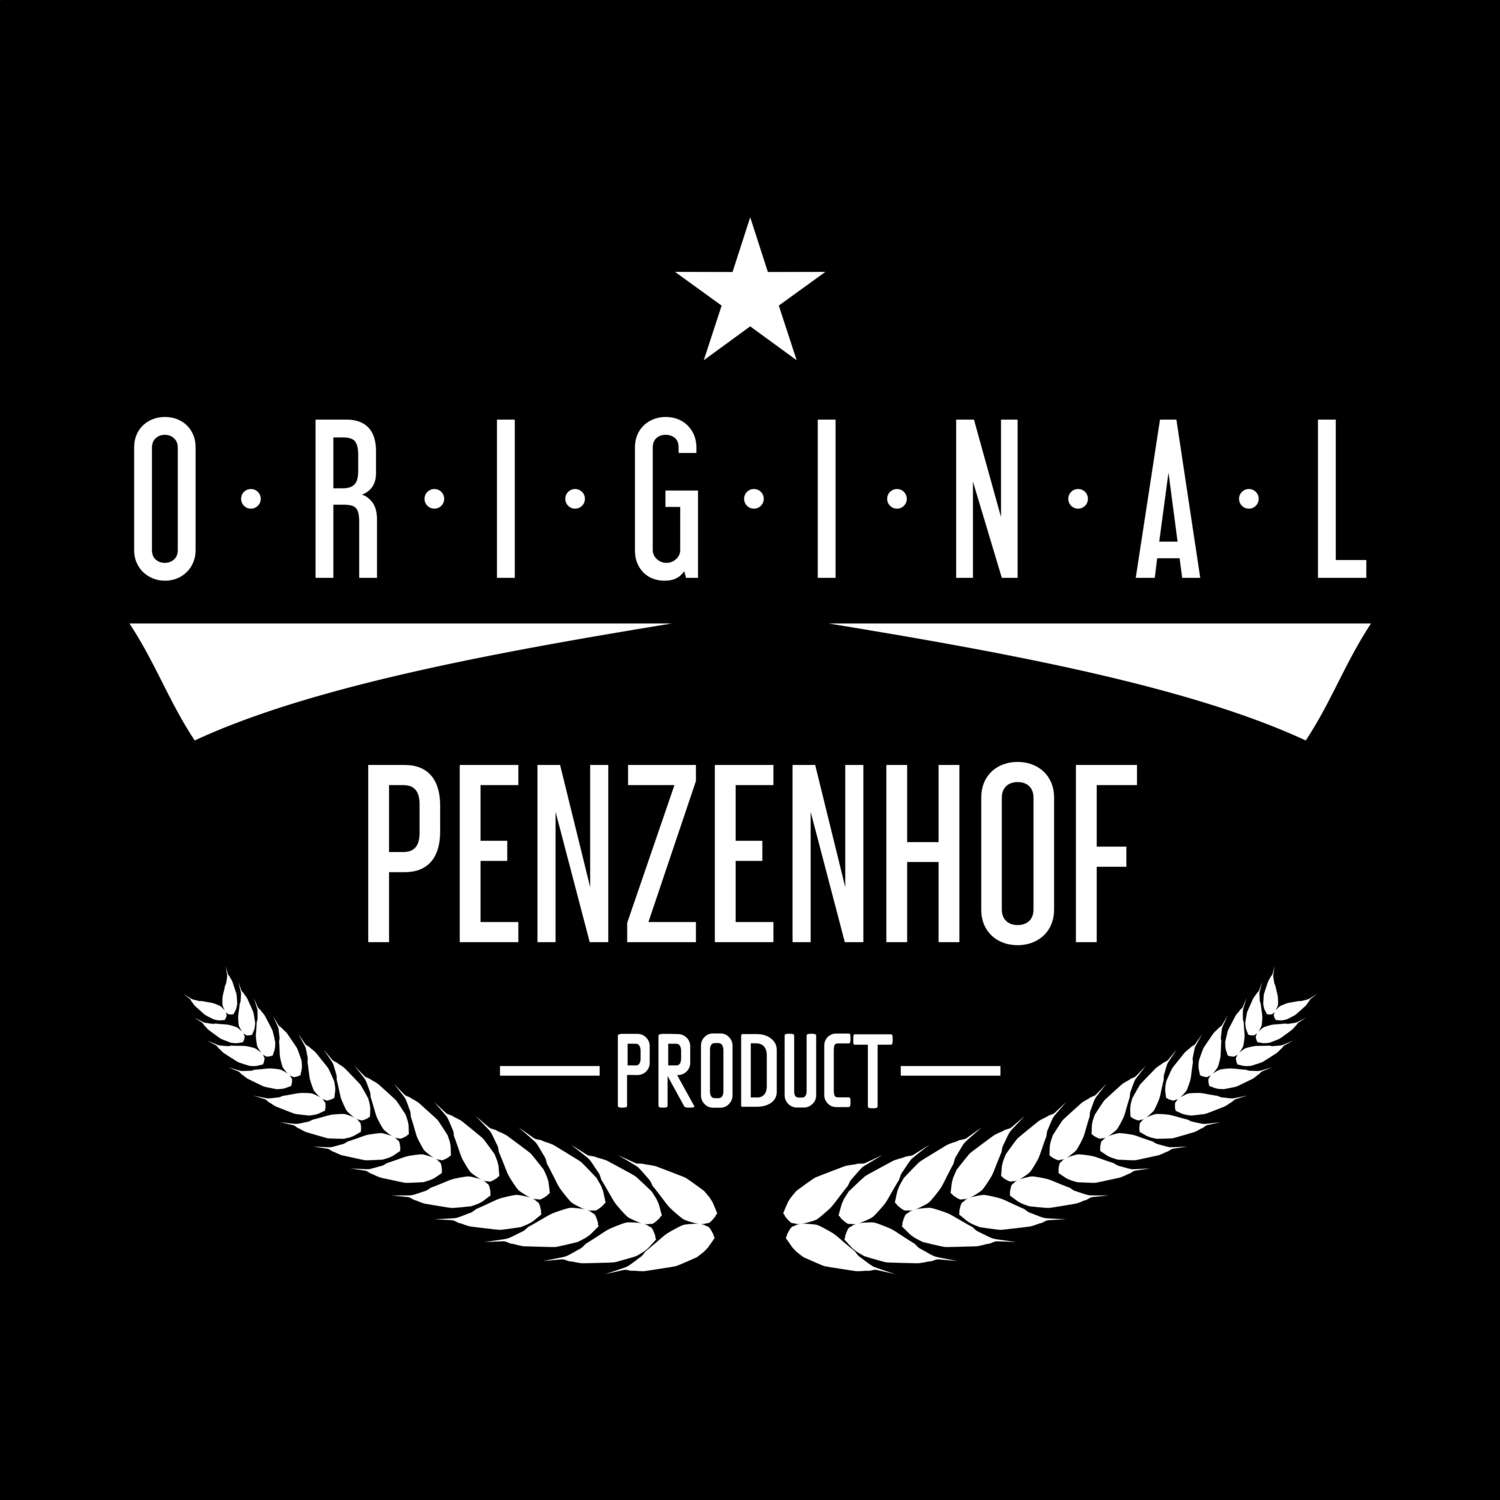 Penzenhof T-Shirt »Original Product«